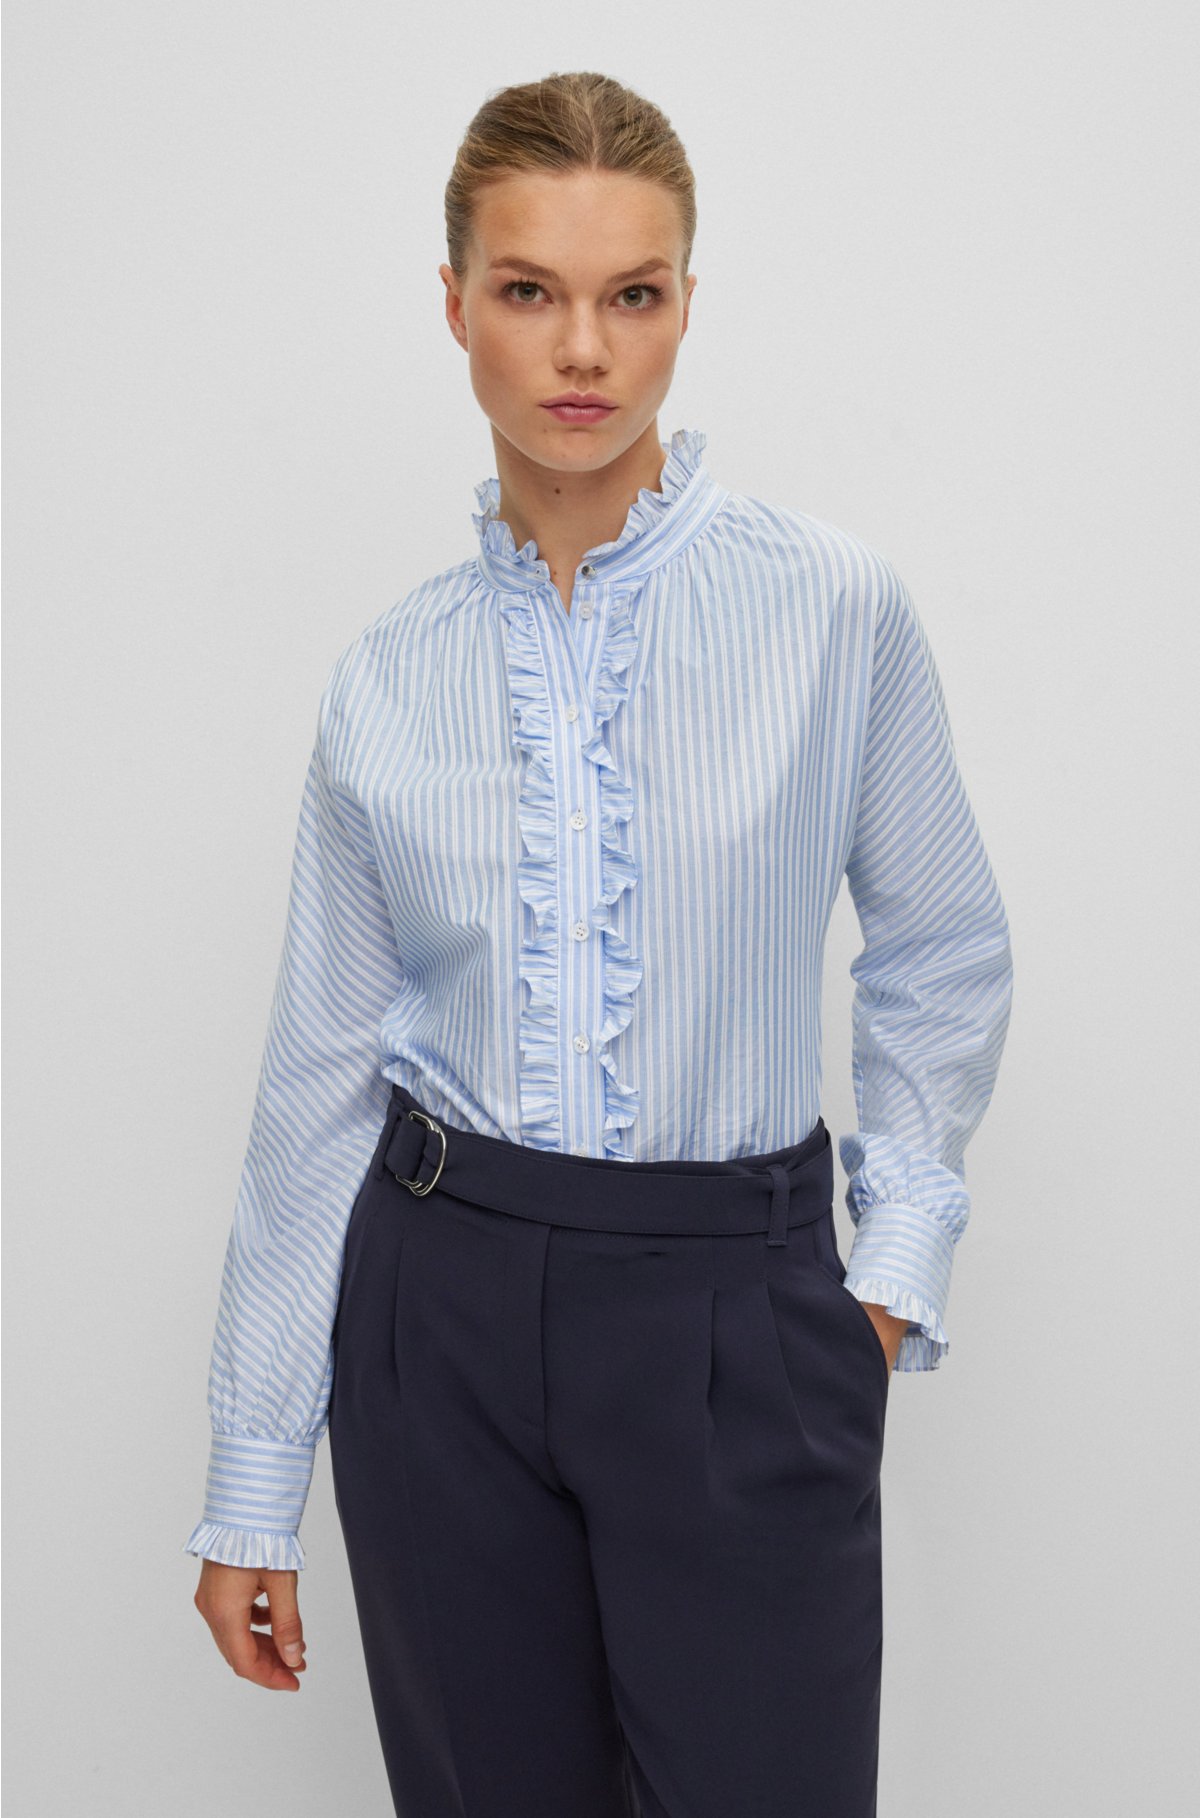 Bij zonsopgang volleybal Verzoekschrift BOSS - Long-sleeved blouse in pinstripe cotton with frill details